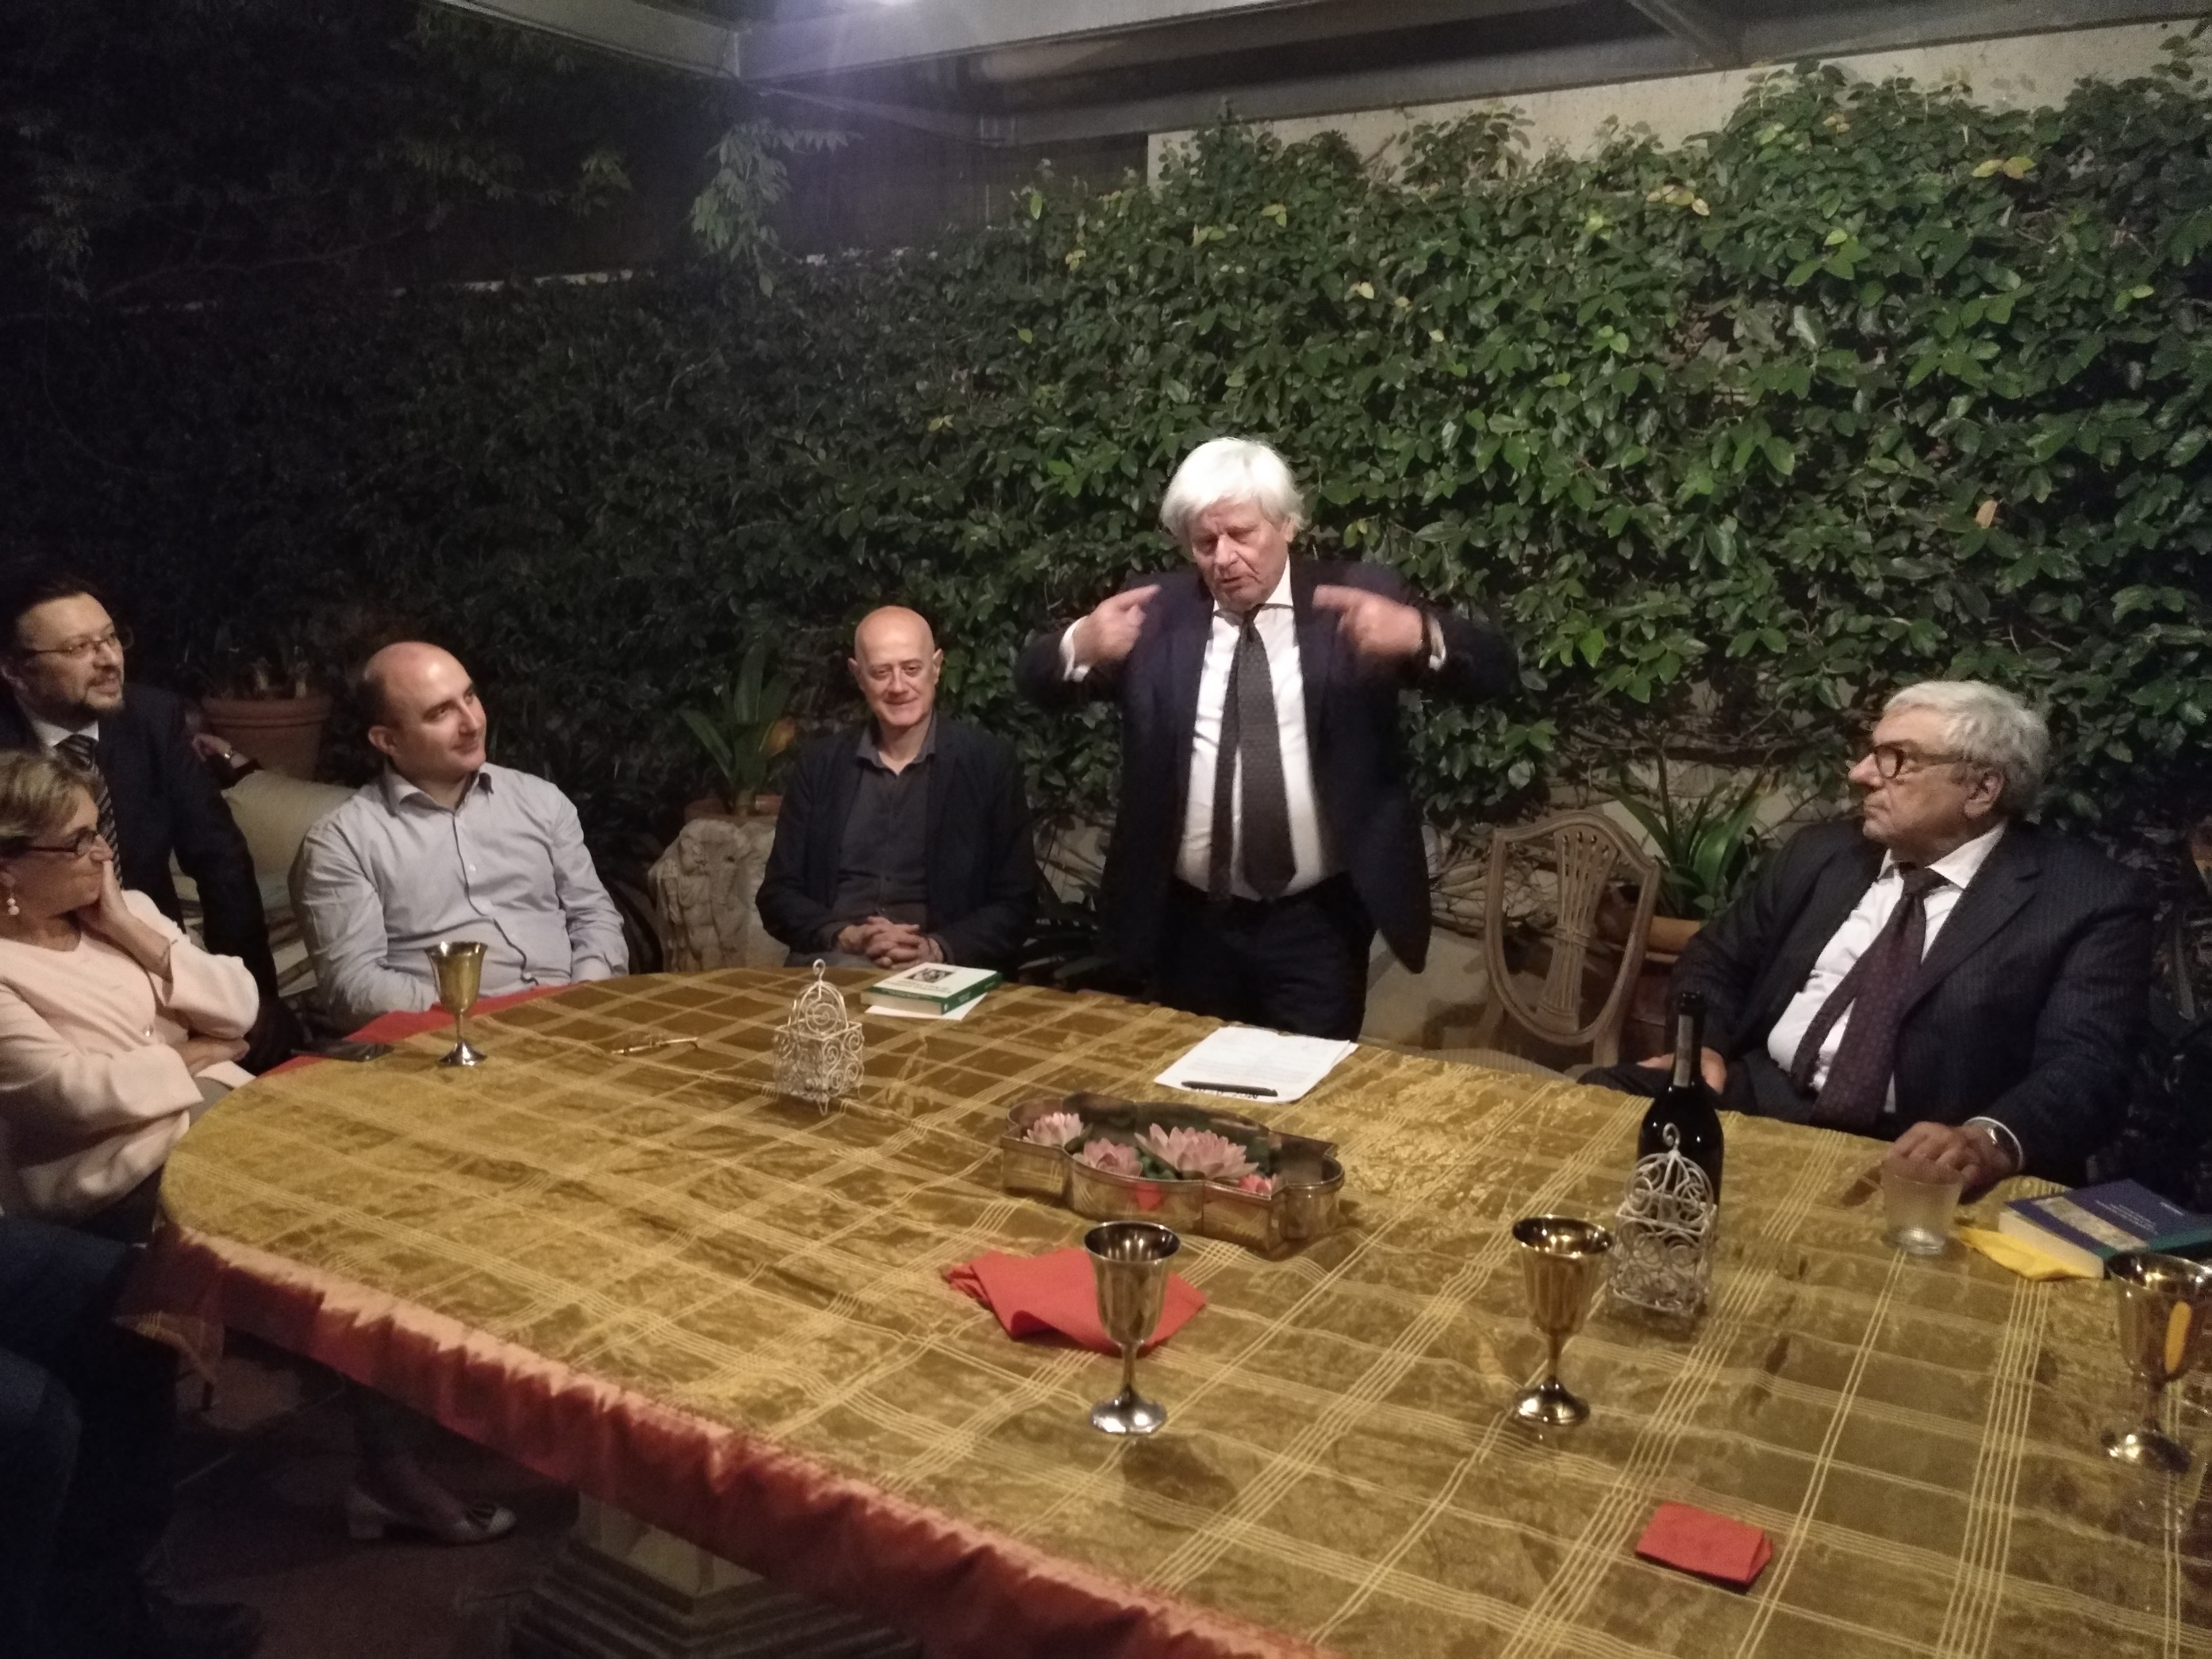 Roma, una cena tra amici, 12 dicembre 2018